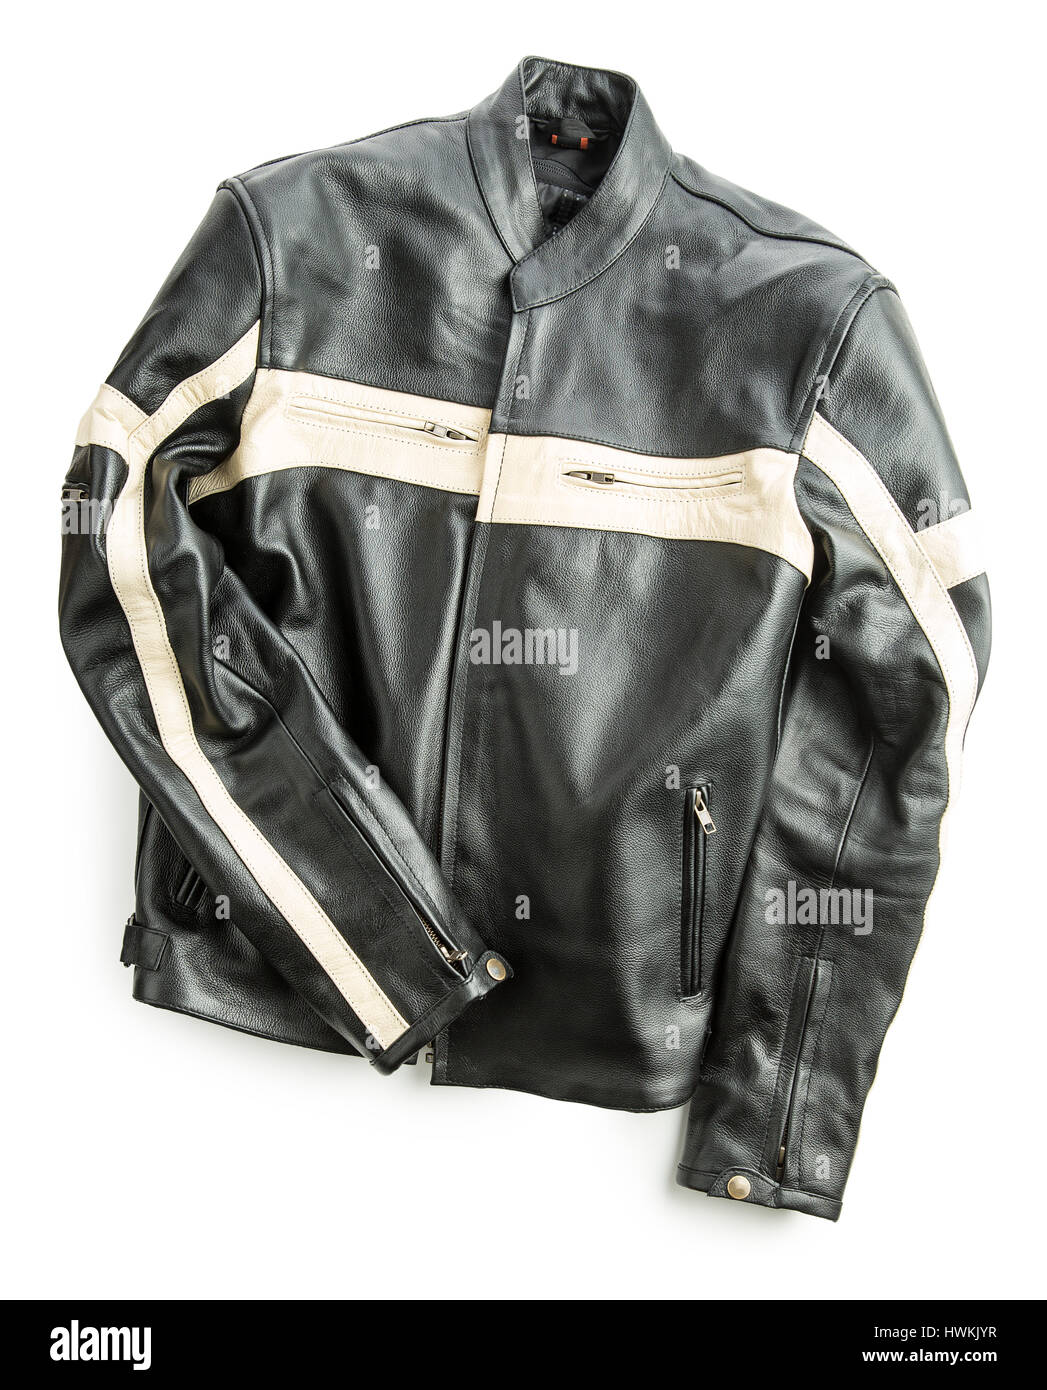 Leather motorcycle jacket isolated on white background. Stock Photo